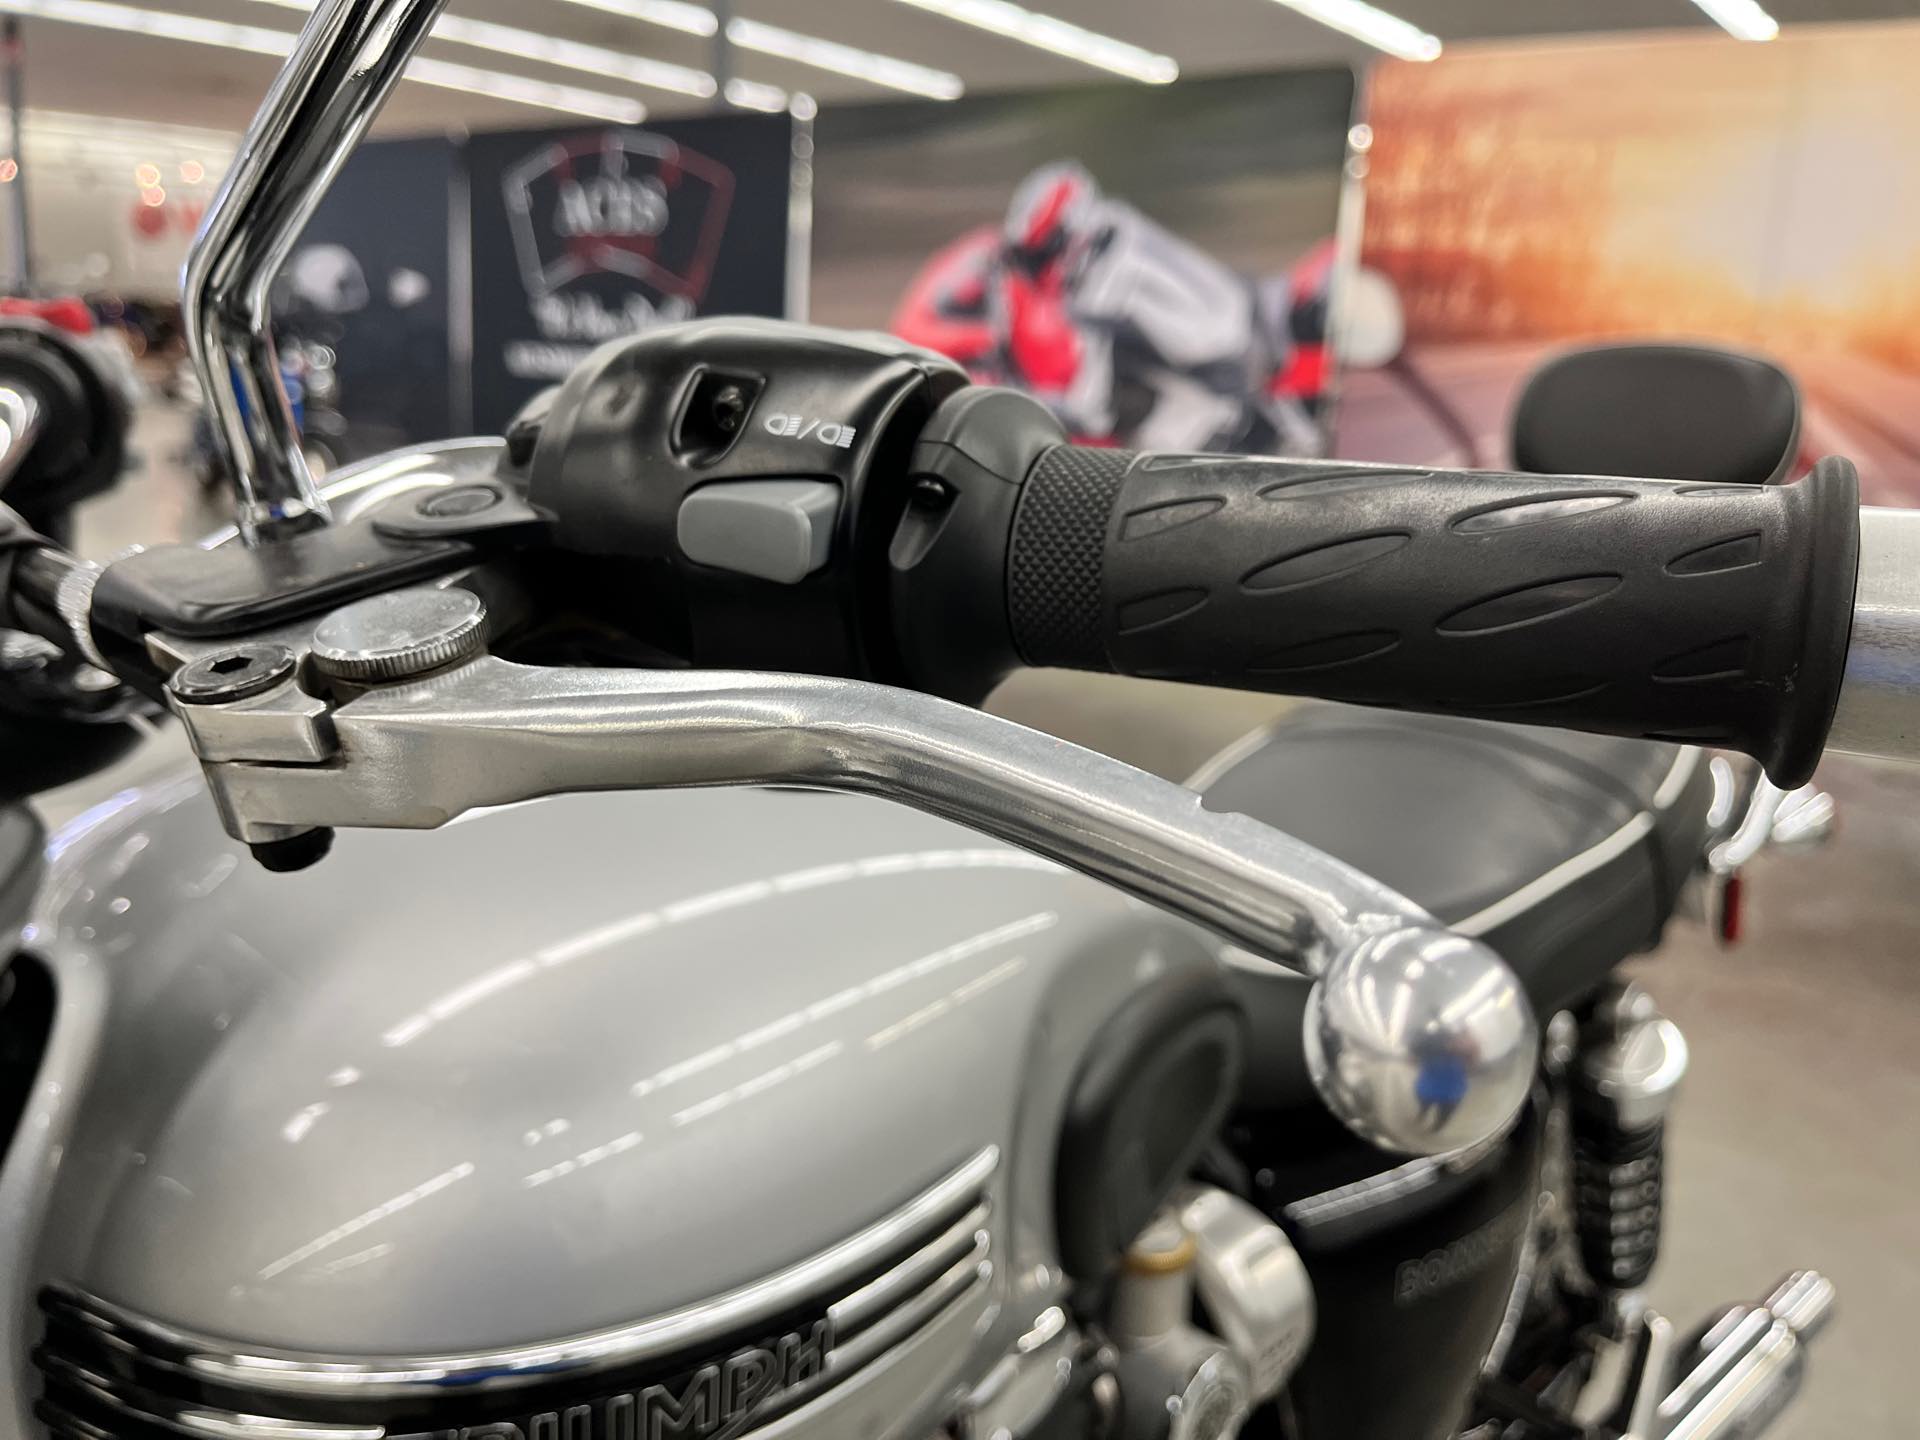 2018 Triumph Bonneville T120 Base at Aces Motorcycles - Denver